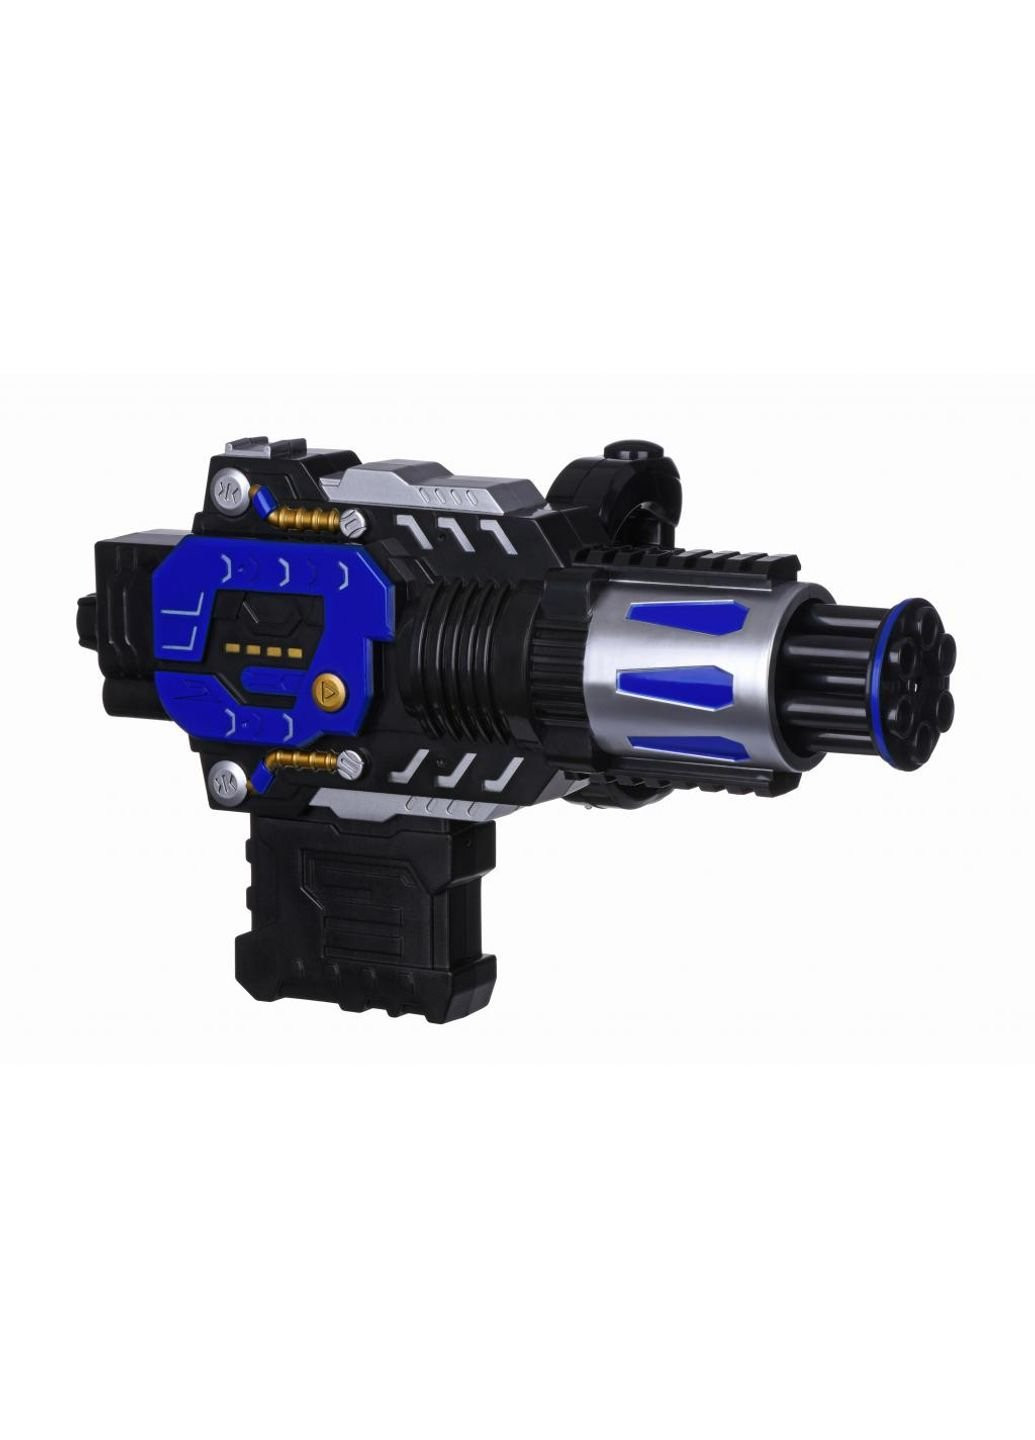 Іграшкова зброя Водний електричний бластер (777-C1Ut) Same Toy (254069026)